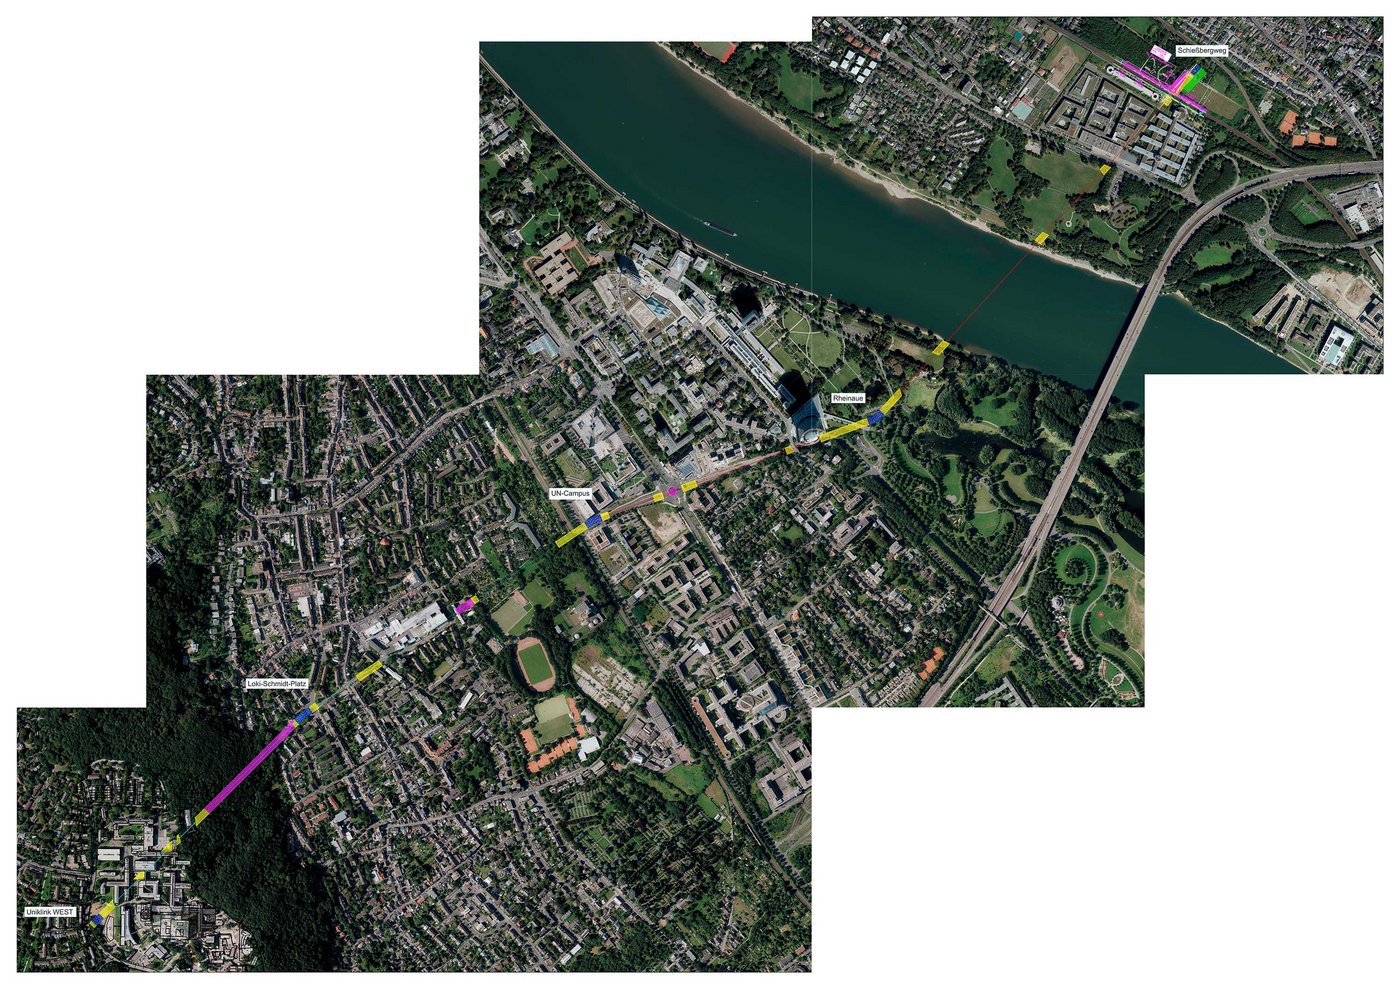 Satellitbild von Bohn. In dieses ist in Farbe die mögliche Route einer zukünftigen Seilbahn eingezeichnet.